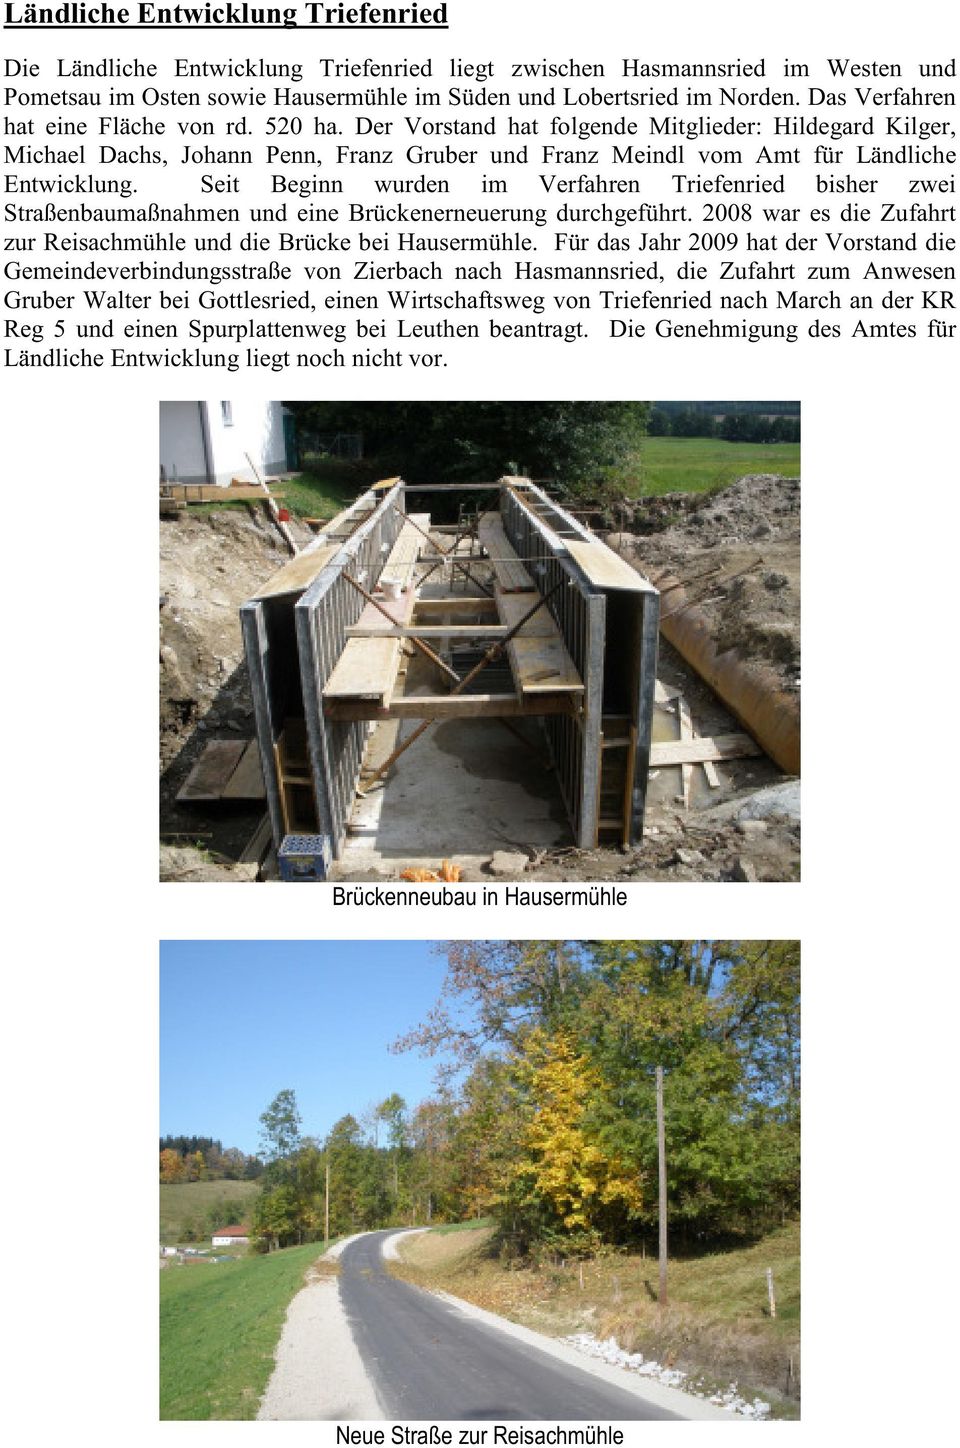 Seit Beginn wurden im Verfahren Triefenried bisher zwei Straßenbaumaßnahmen und eine Brückenerneuerung durchgeführt. 2008 war es die Zufahrt zur Reisachmühle und die Brücke bei Hausermühle.